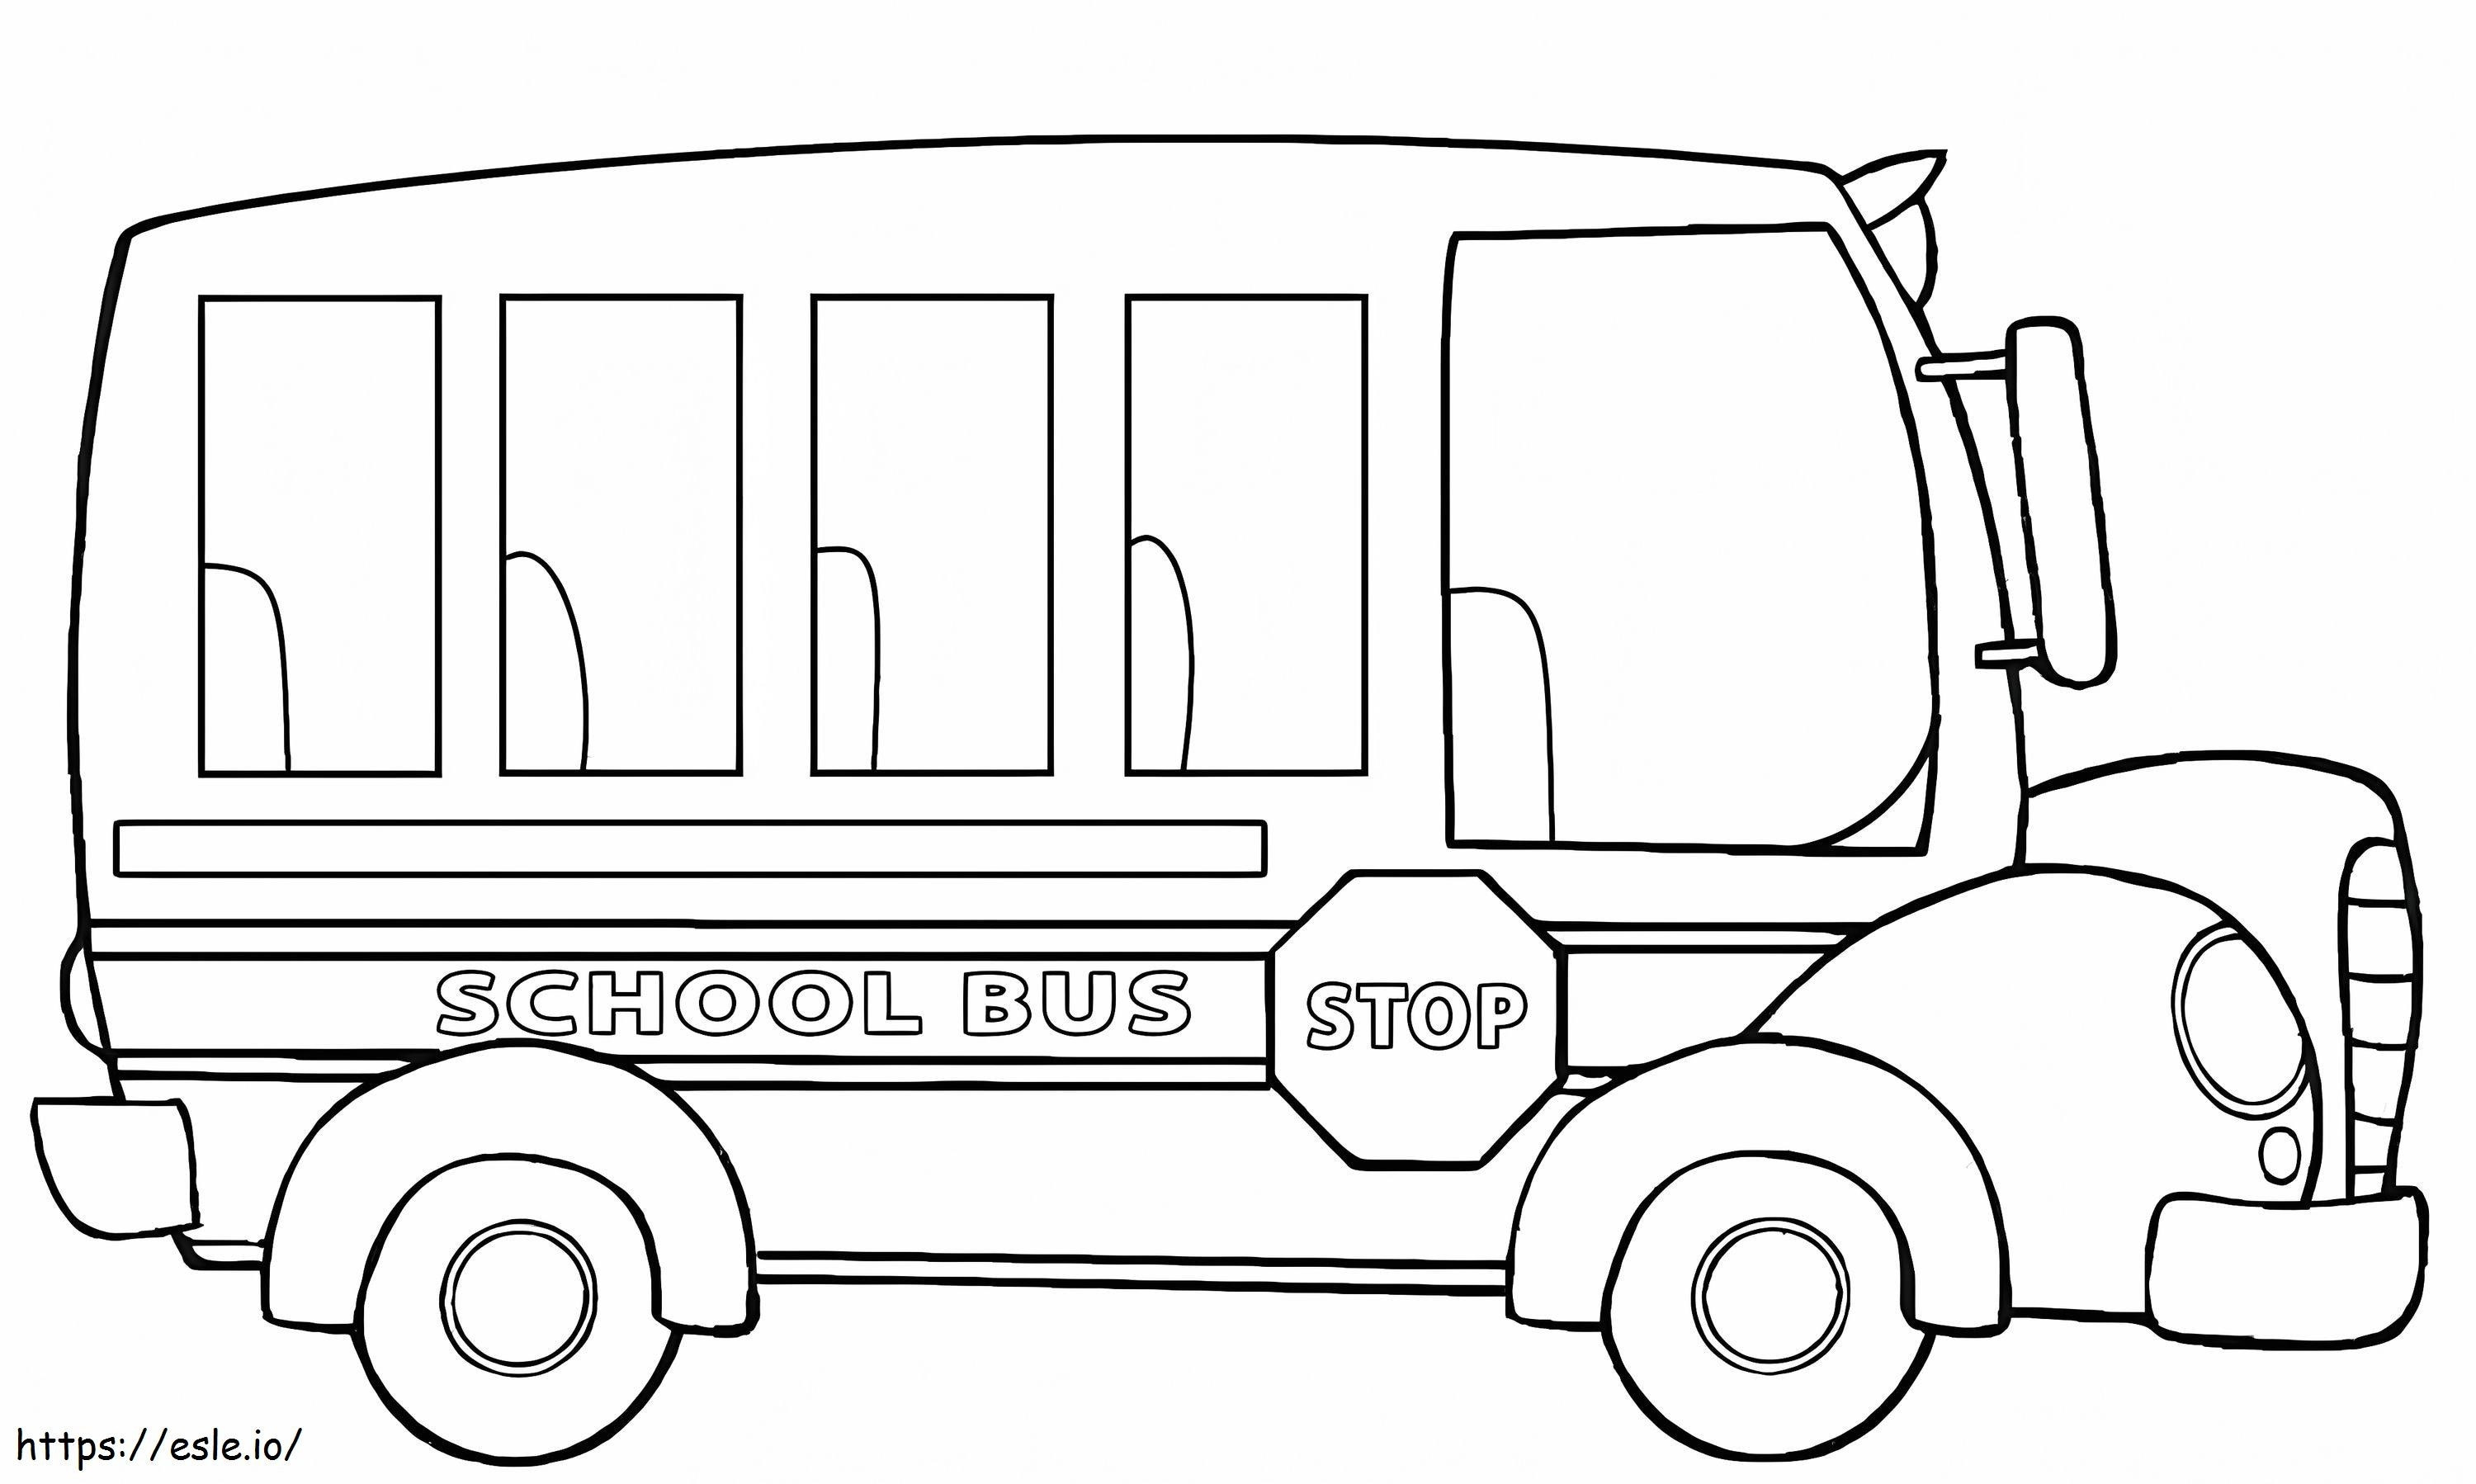 Increíble autobús escolar para colorear